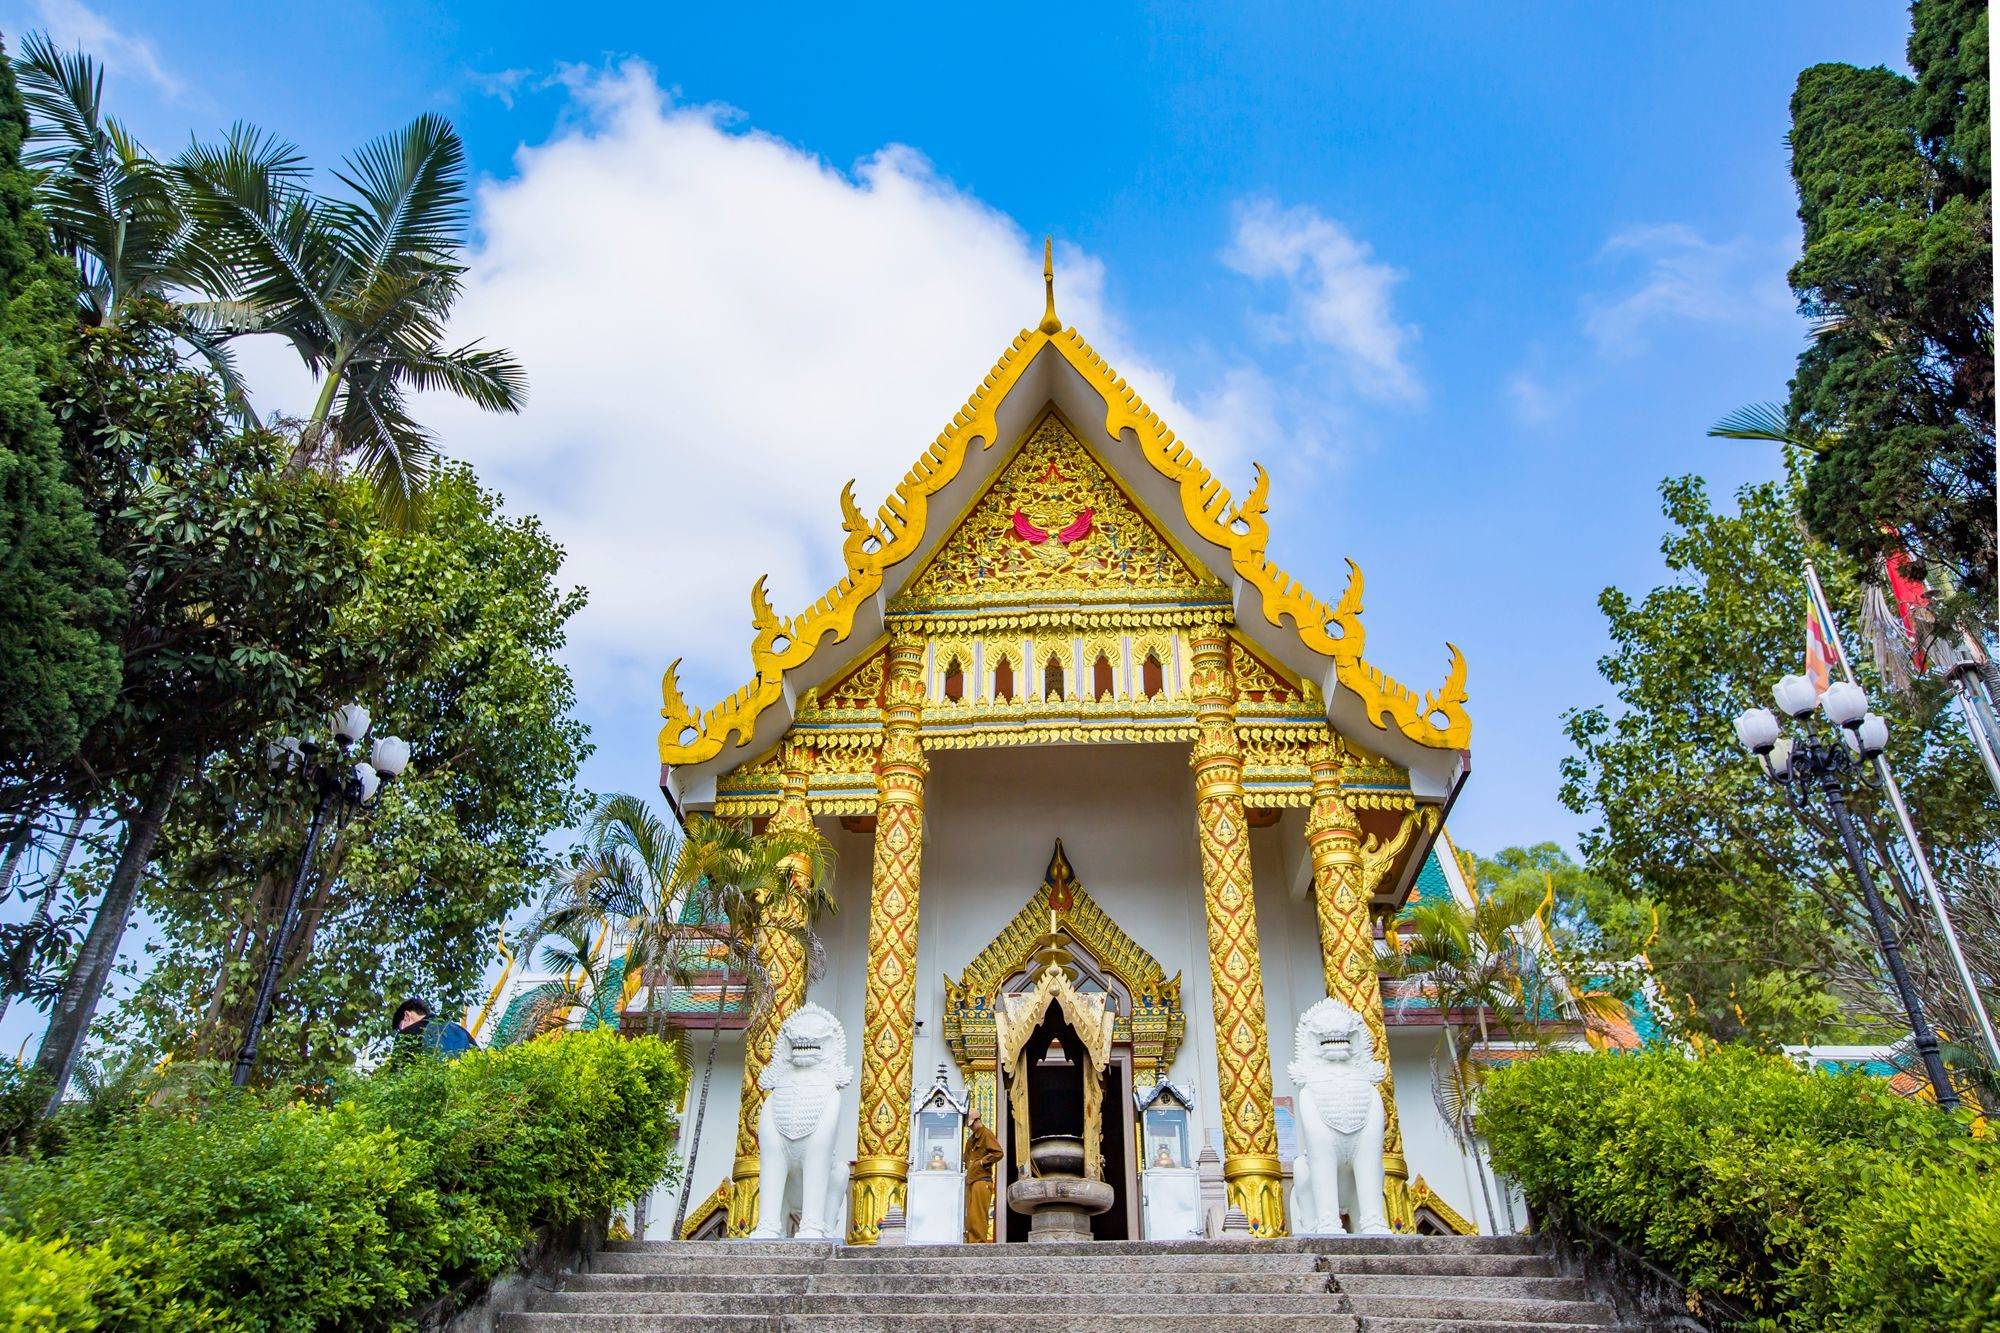 潮州开元寺泰佛殿,潮州小众拍照圣地,0元就可以穿越到泰国